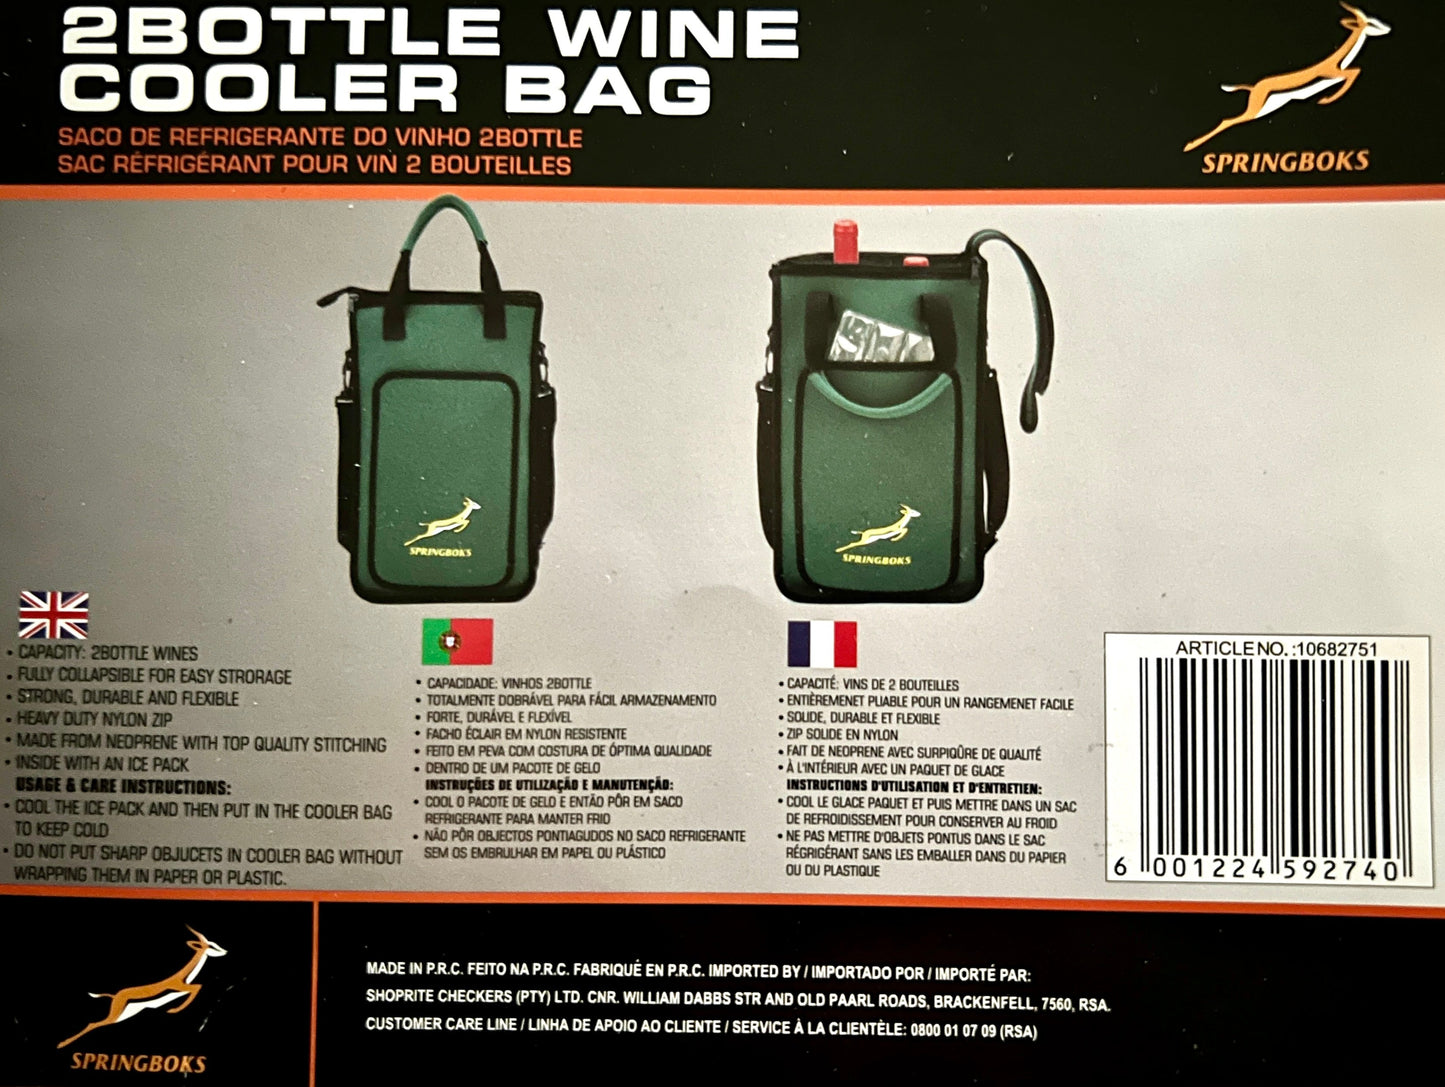 Springbok 2 Bottle Wine Cooler Bag